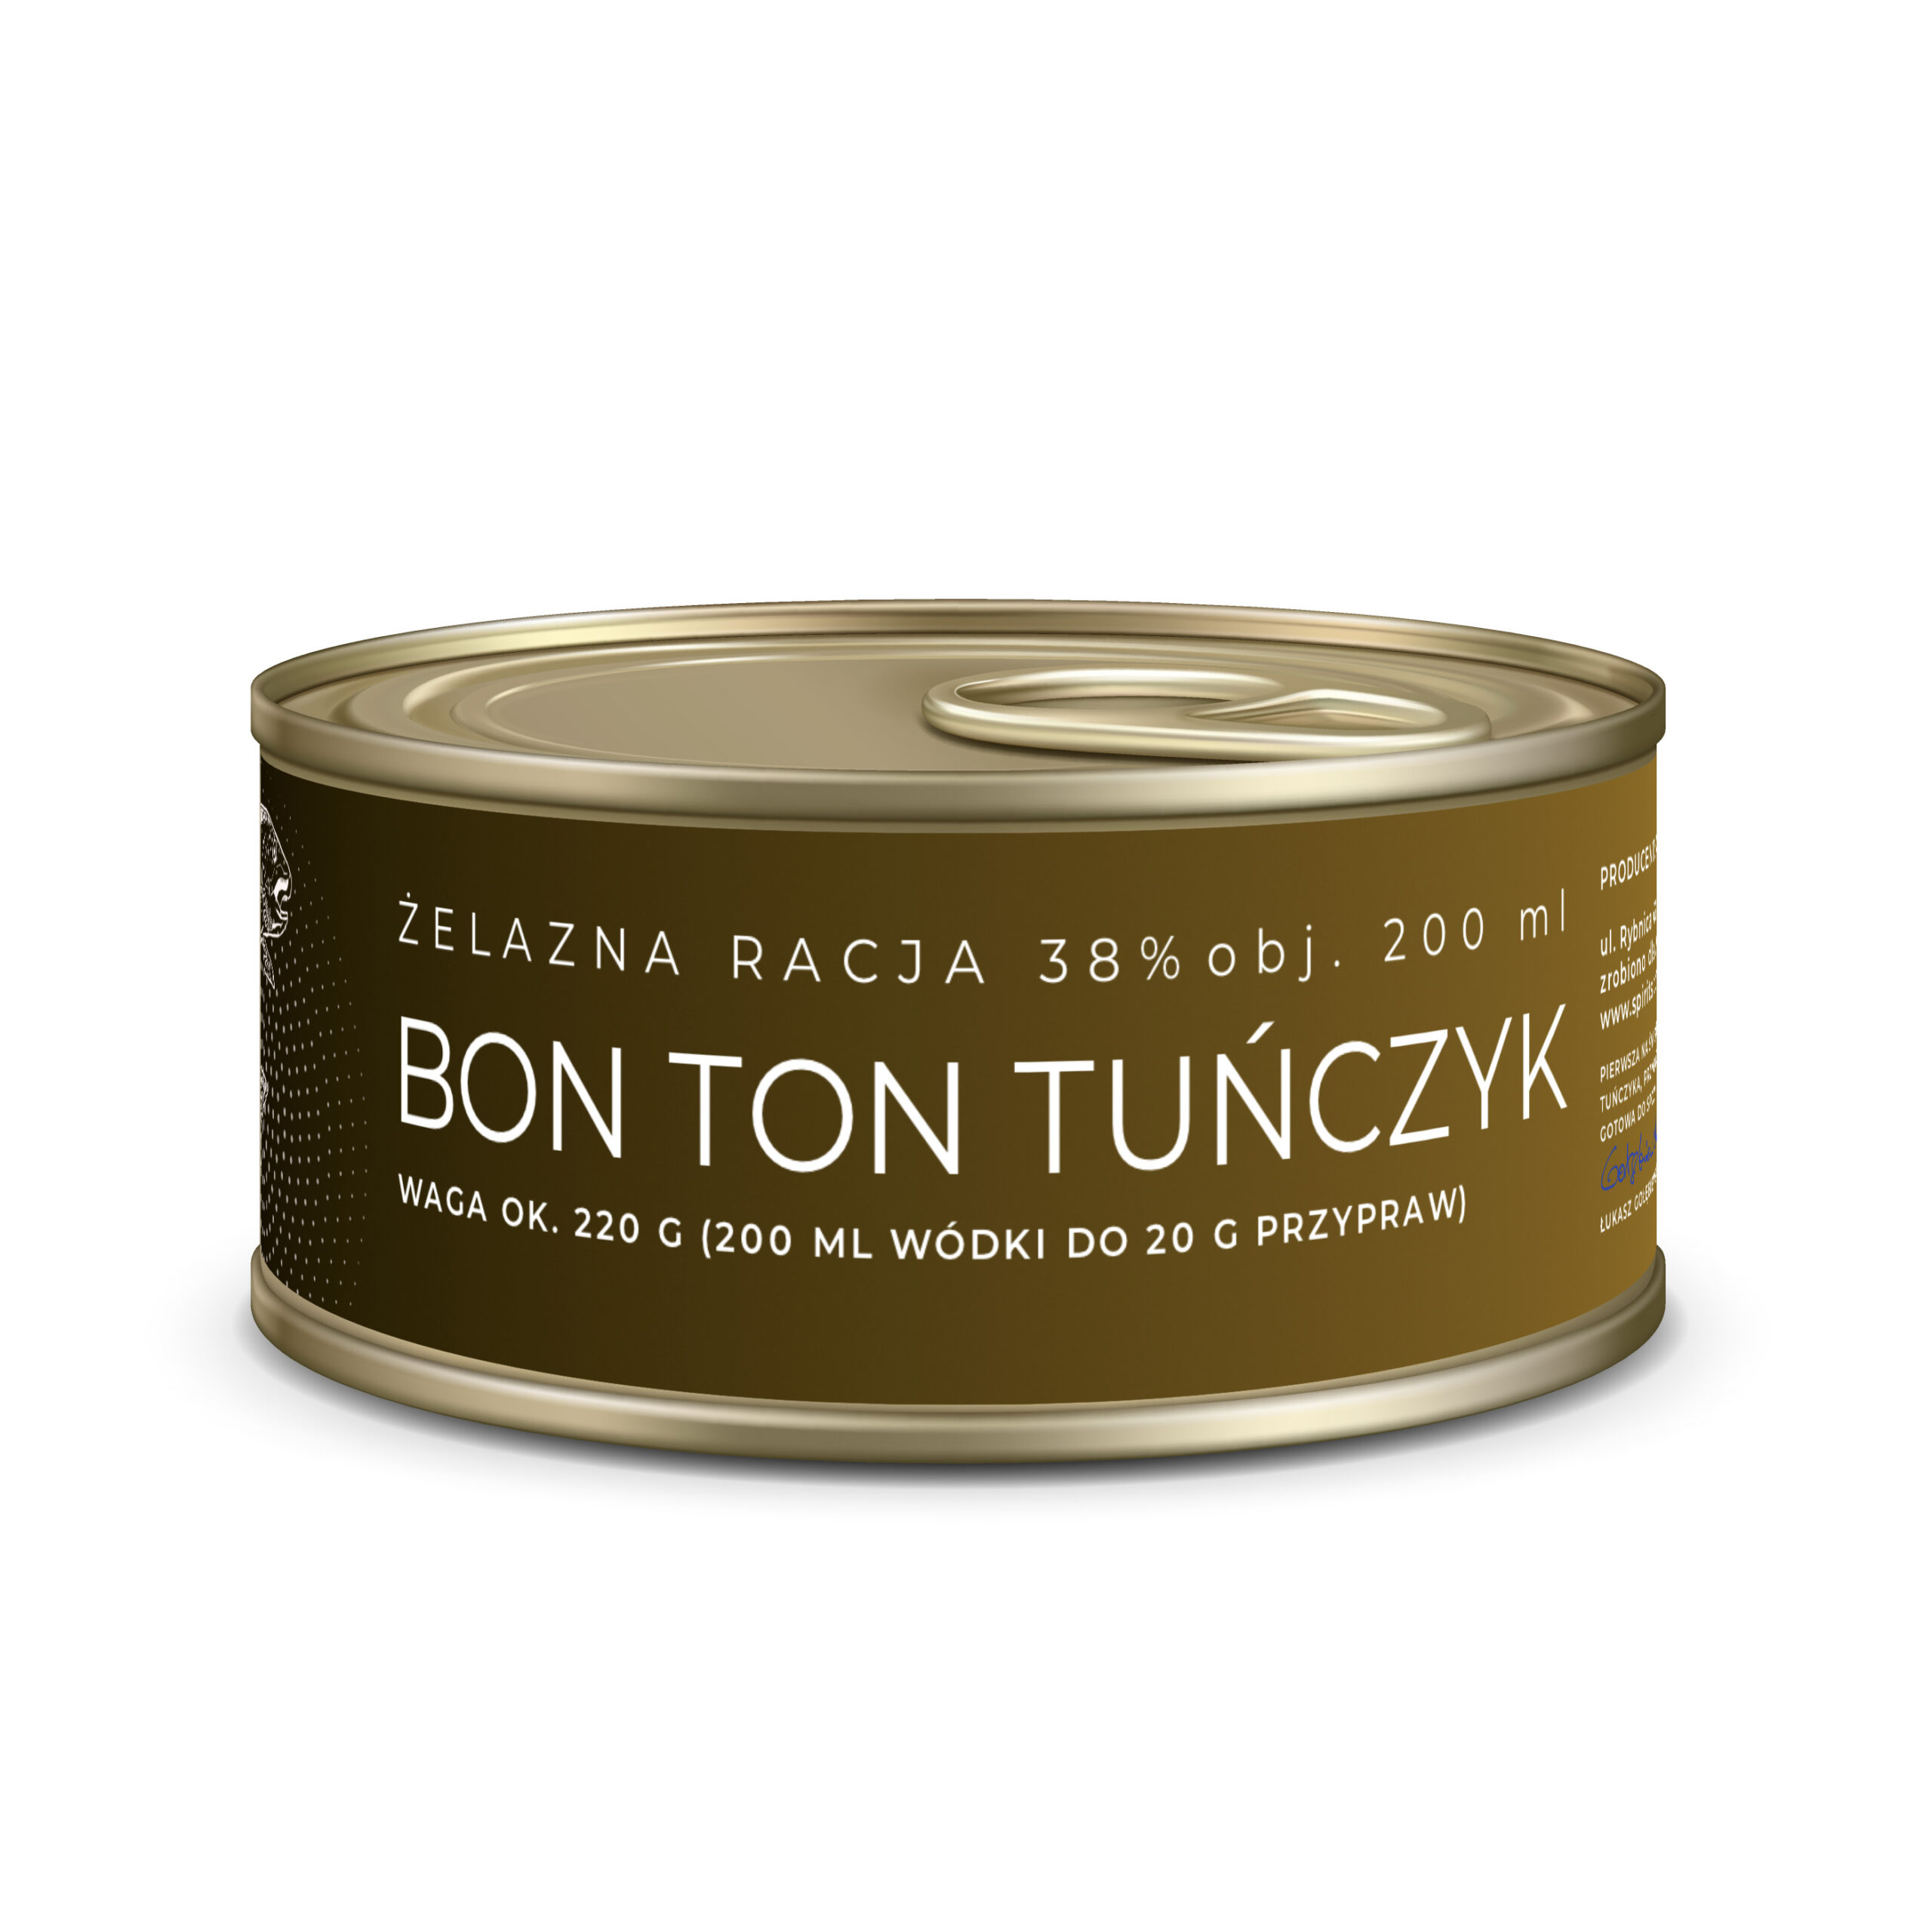 Bon Ton Tuńczyk